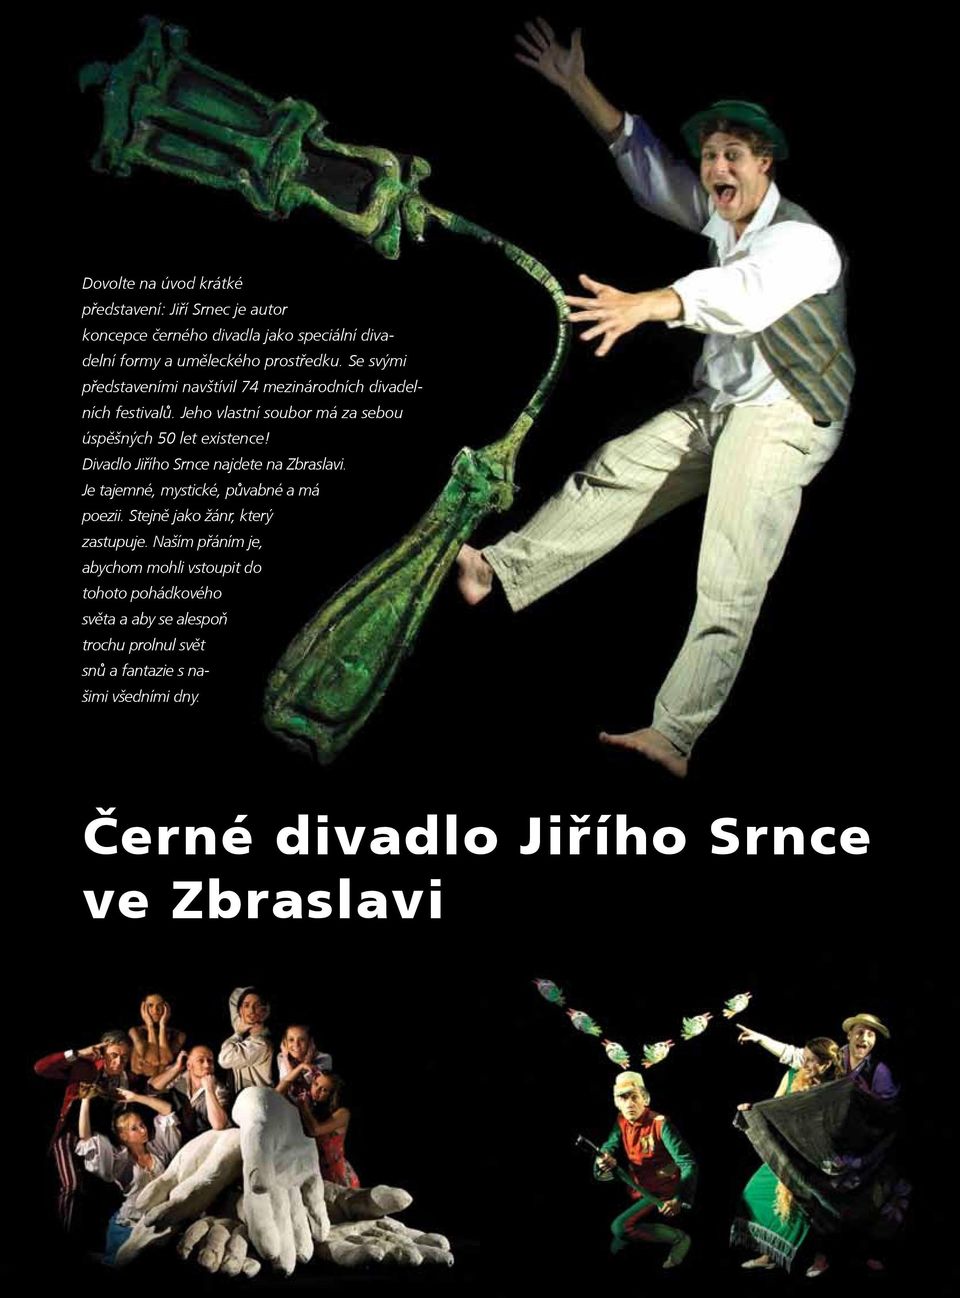 Divadlo Jiřího Srnce najdete na Zbraslavi. Je tajemné, mystické, půvabné a má poezii. Stejně jako žánr, který zastupuje.